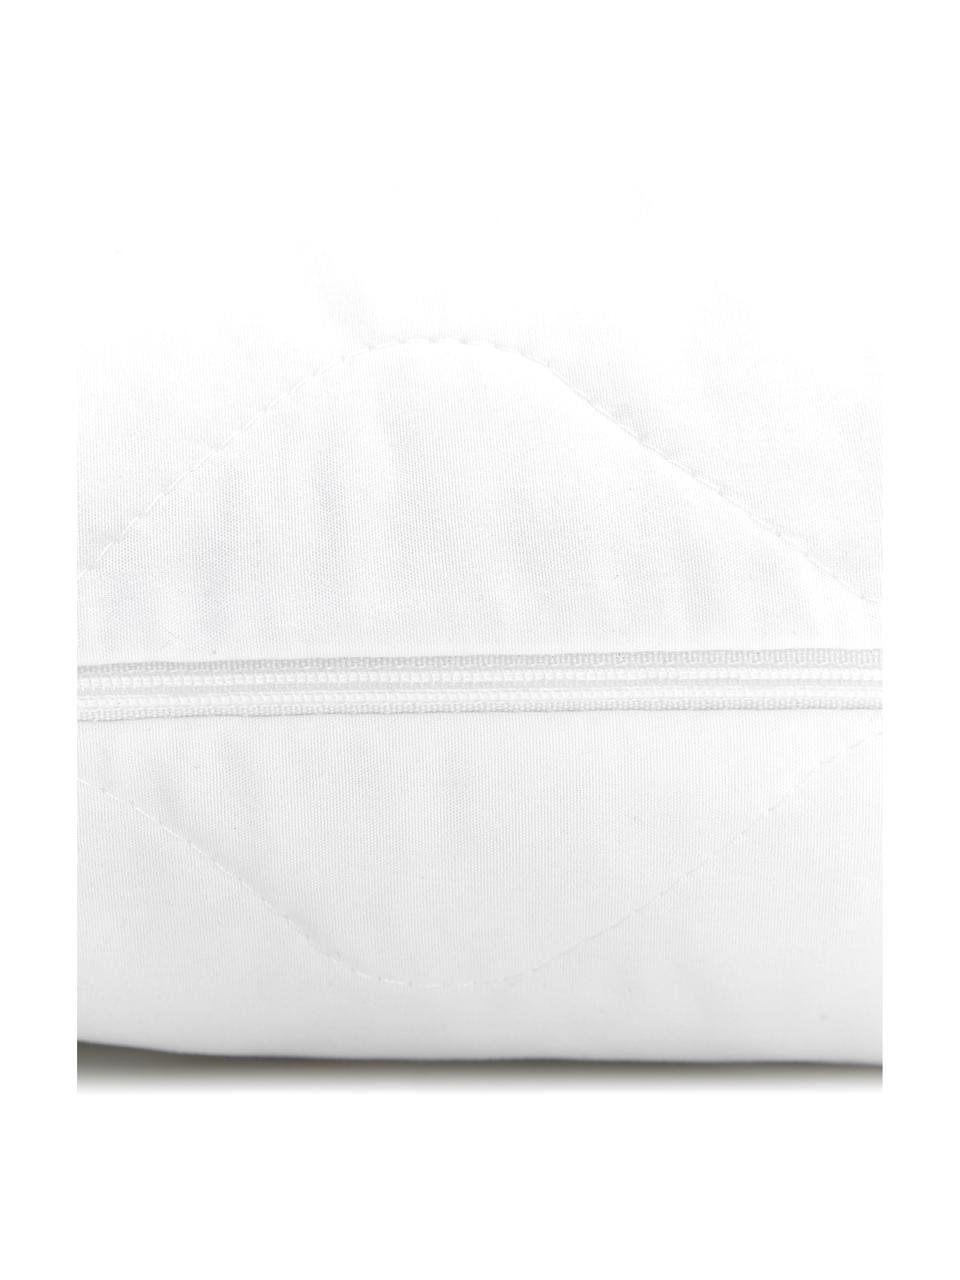 Wkład do poduszki Premium Sia, 30x50, Biały, S 30 x D 50 cm